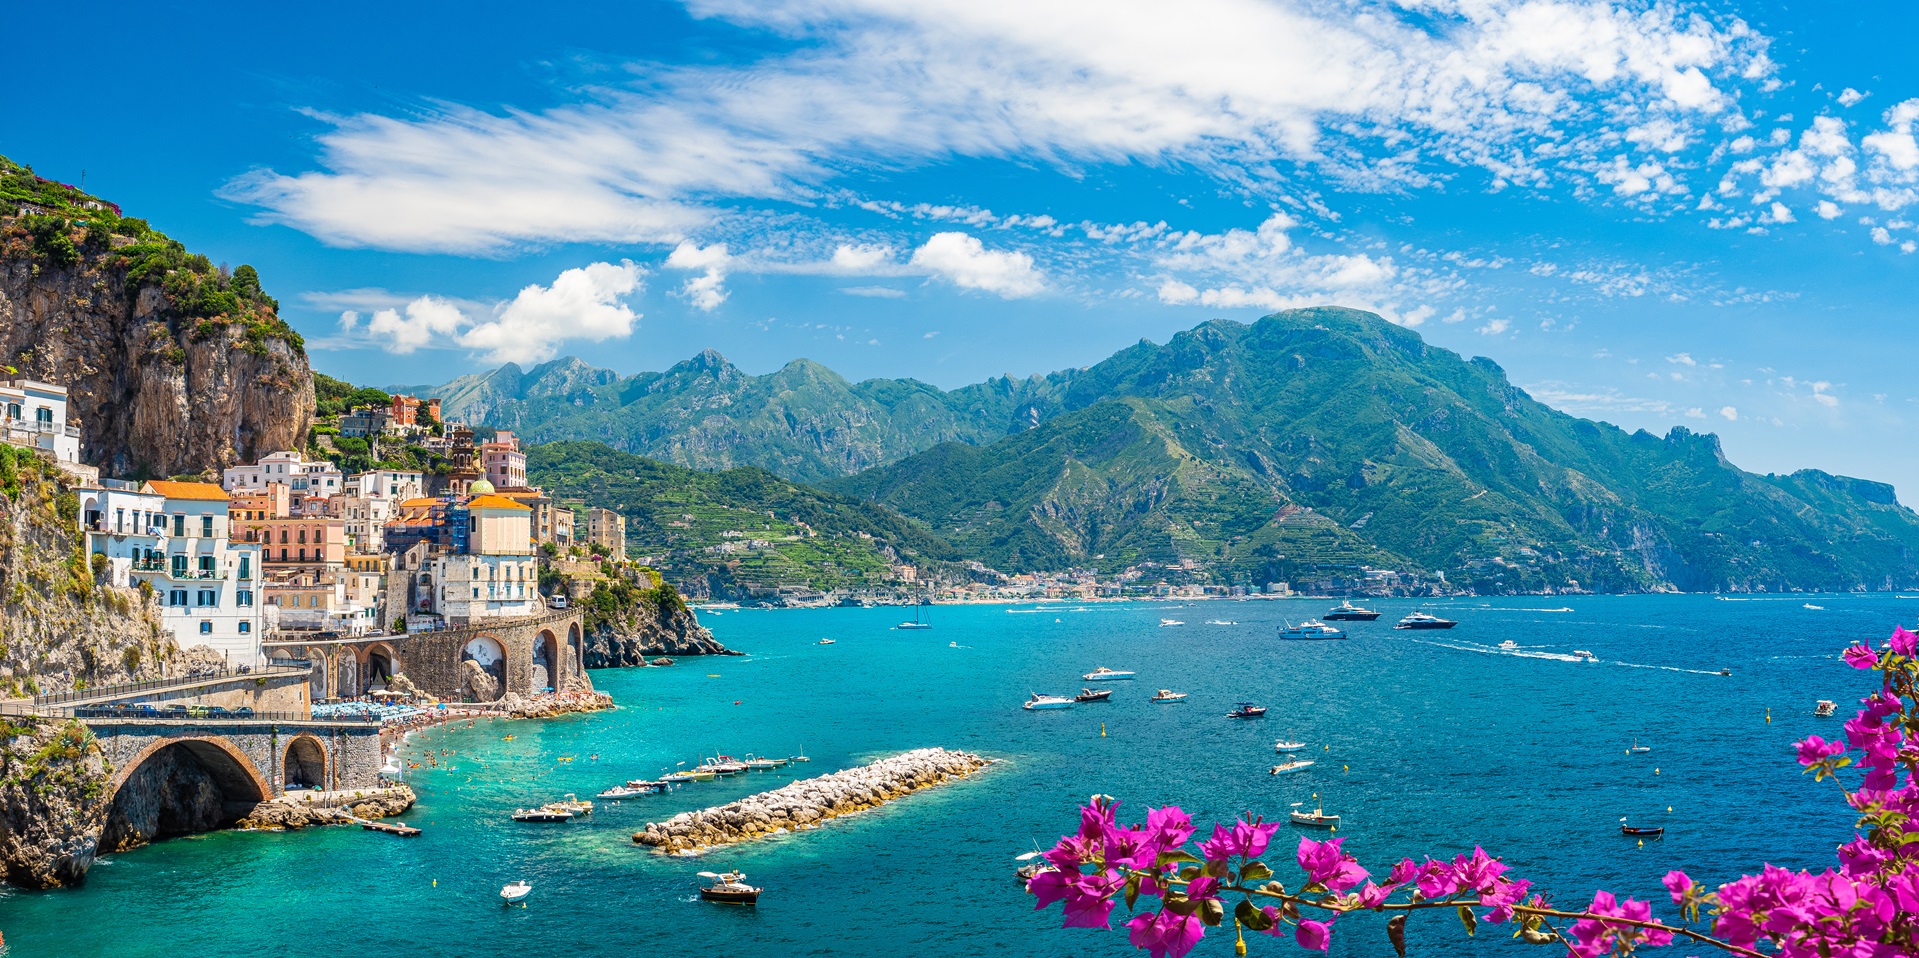 Amalfi Coast's beauty